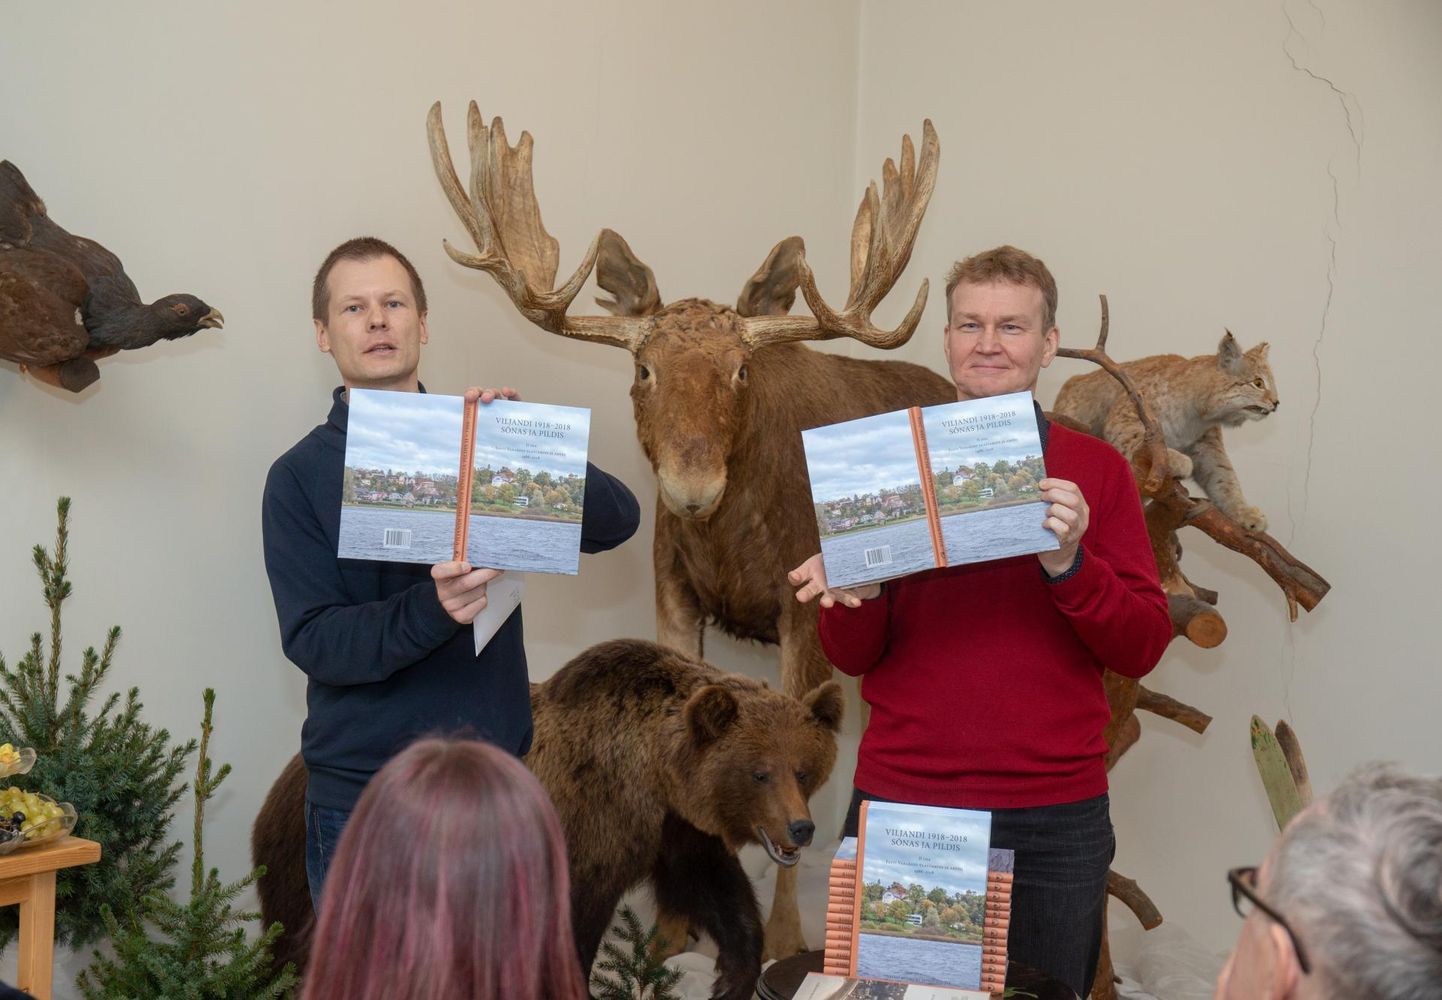 Raamatut esitlesid 18. detsembril Viljandi muuseumis üks autoreid Herki Helves (vasakul) ja muuseumi direktor Jaak Pihlak.